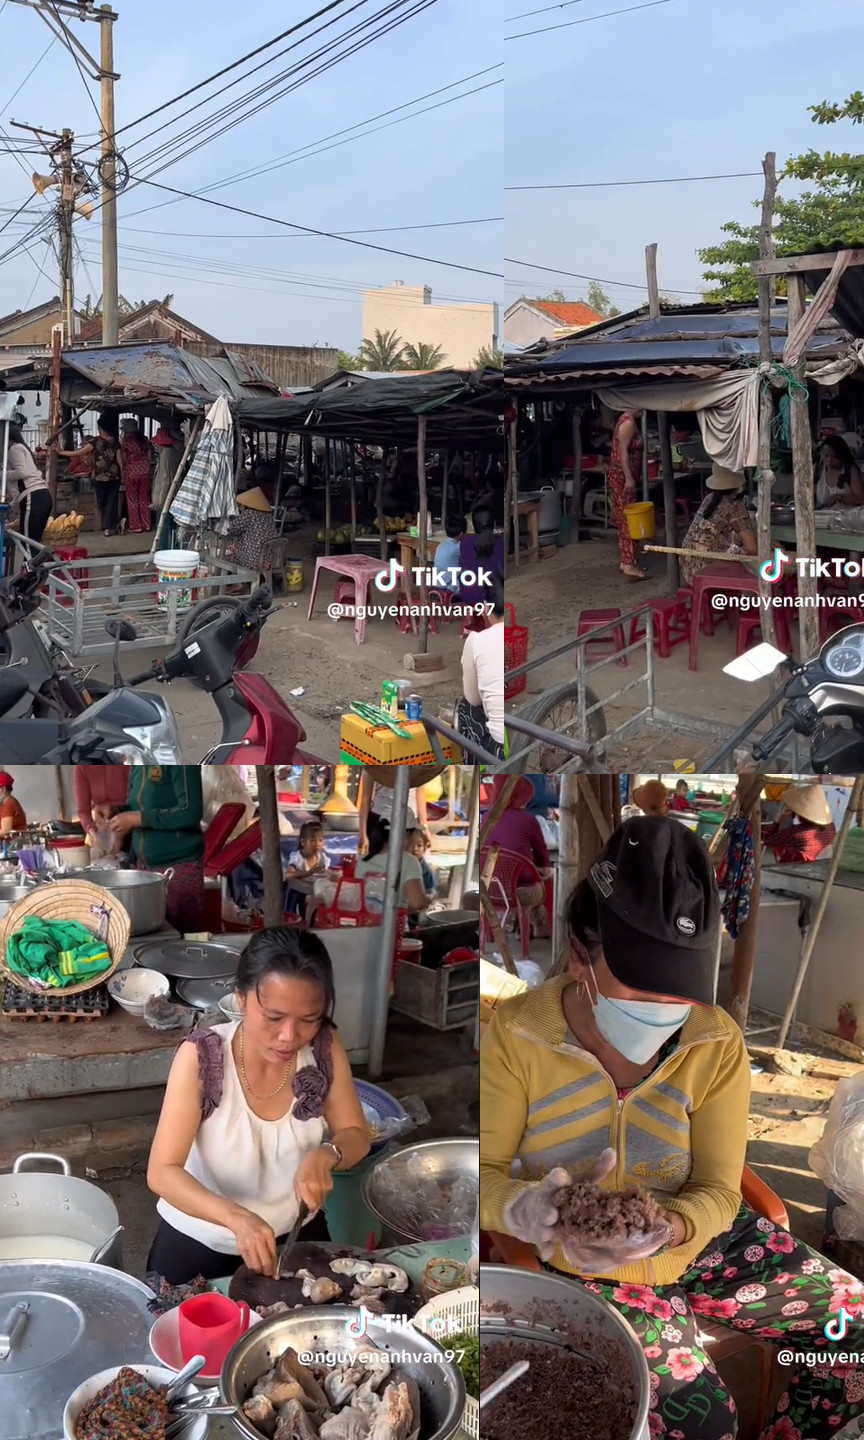 Sự thật về khu chợ ở Phú Yên được ca ngợi “rẻ nhất Việt Nam”, khiến người giới thiệu phải tung bằng chứng xác thực - Ảnh 6.